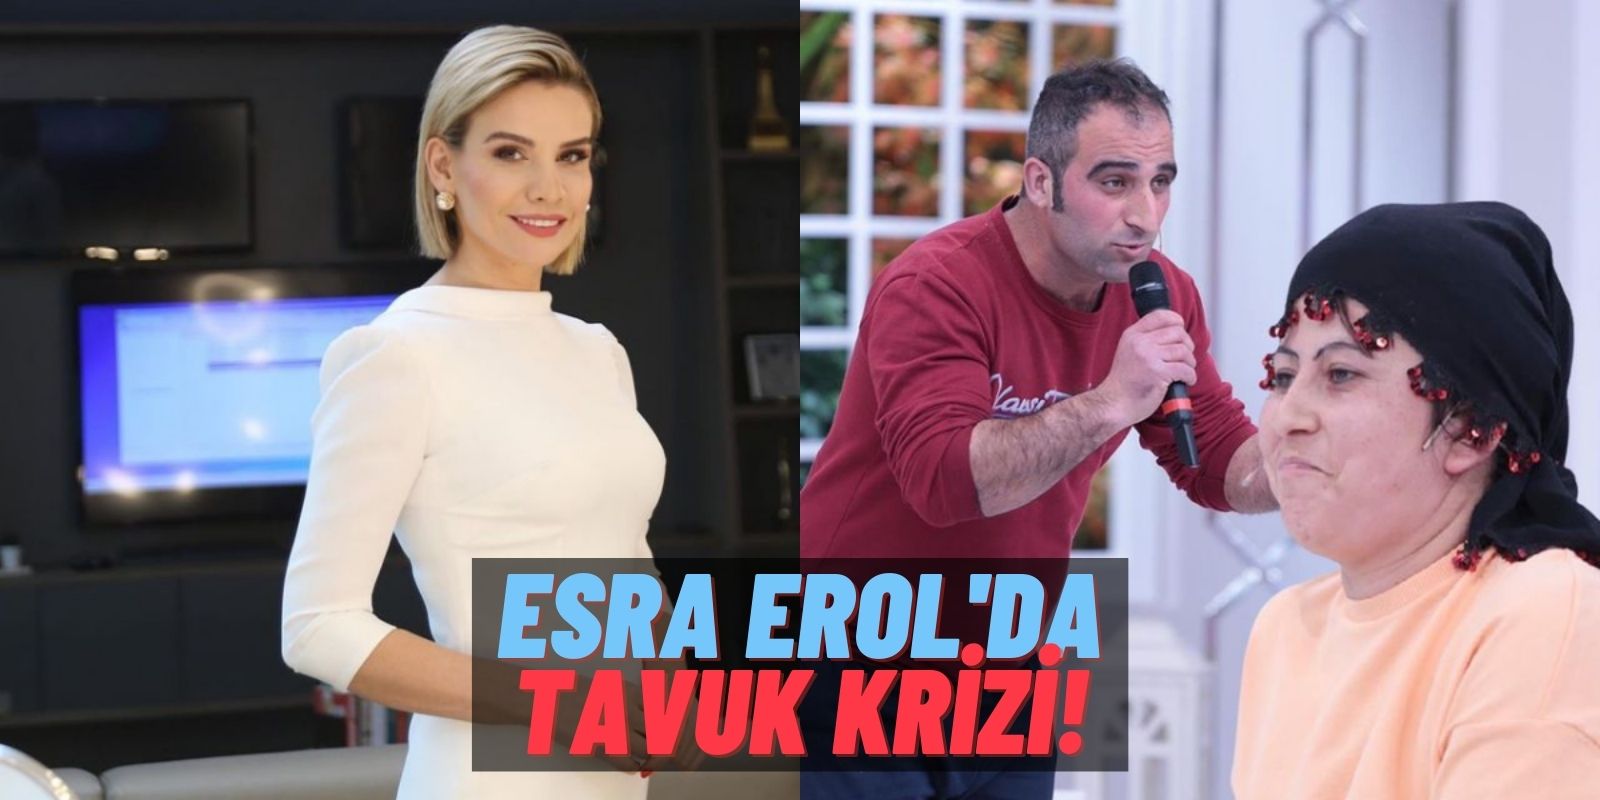 Tövbe Estağfurullah: Esra Erol’un Programında “Tavuk” Krizi! “Eşim Tavuğa Tasma Takıp Parkta Gezdiriyordu!”